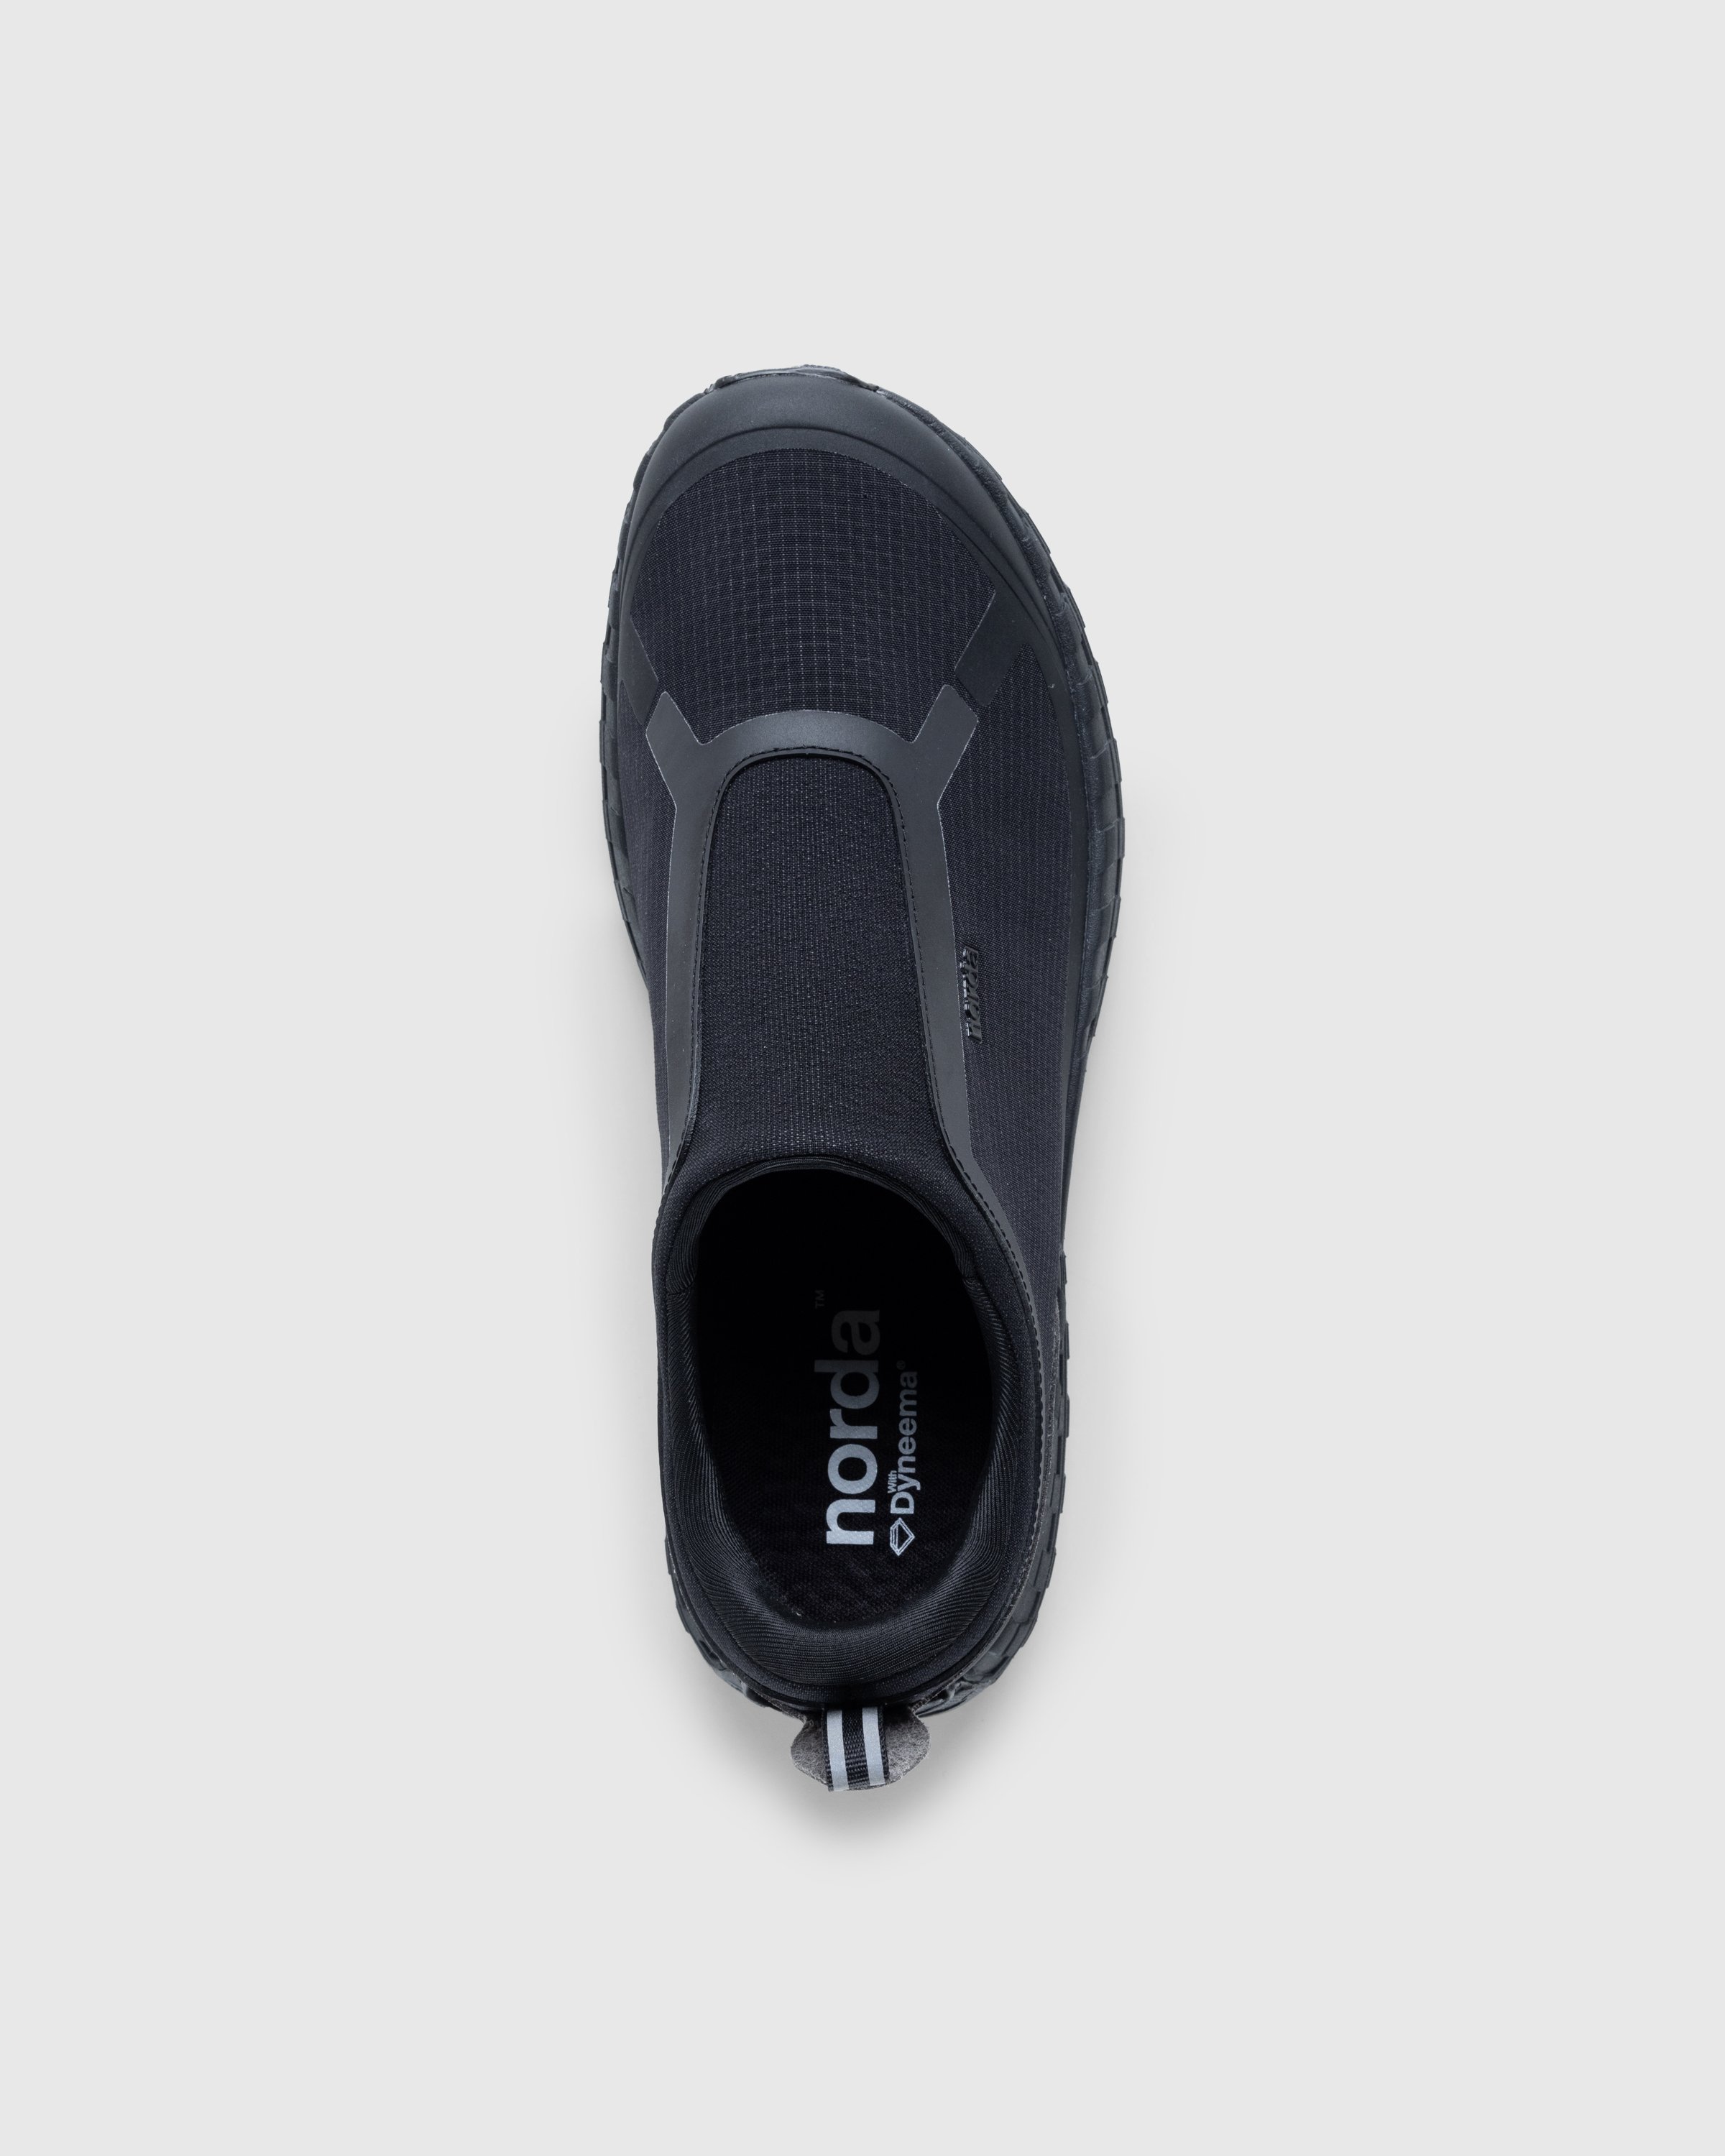 Norda - NORDA003-W - Footwear - Black - Image 5